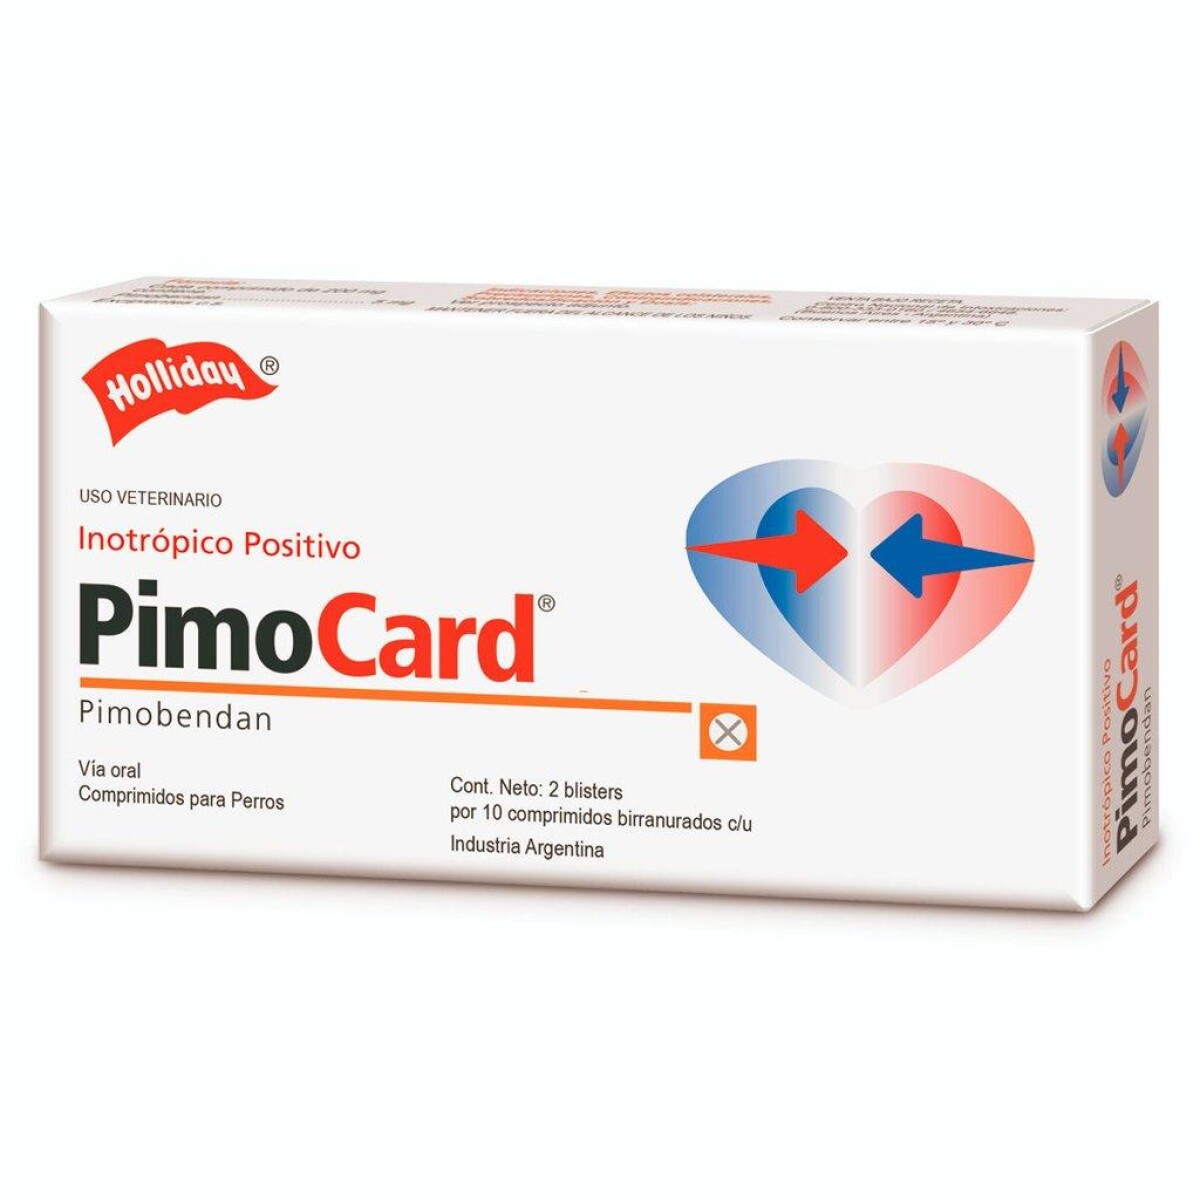 PIMOCARD 5 - Pimocard 5 